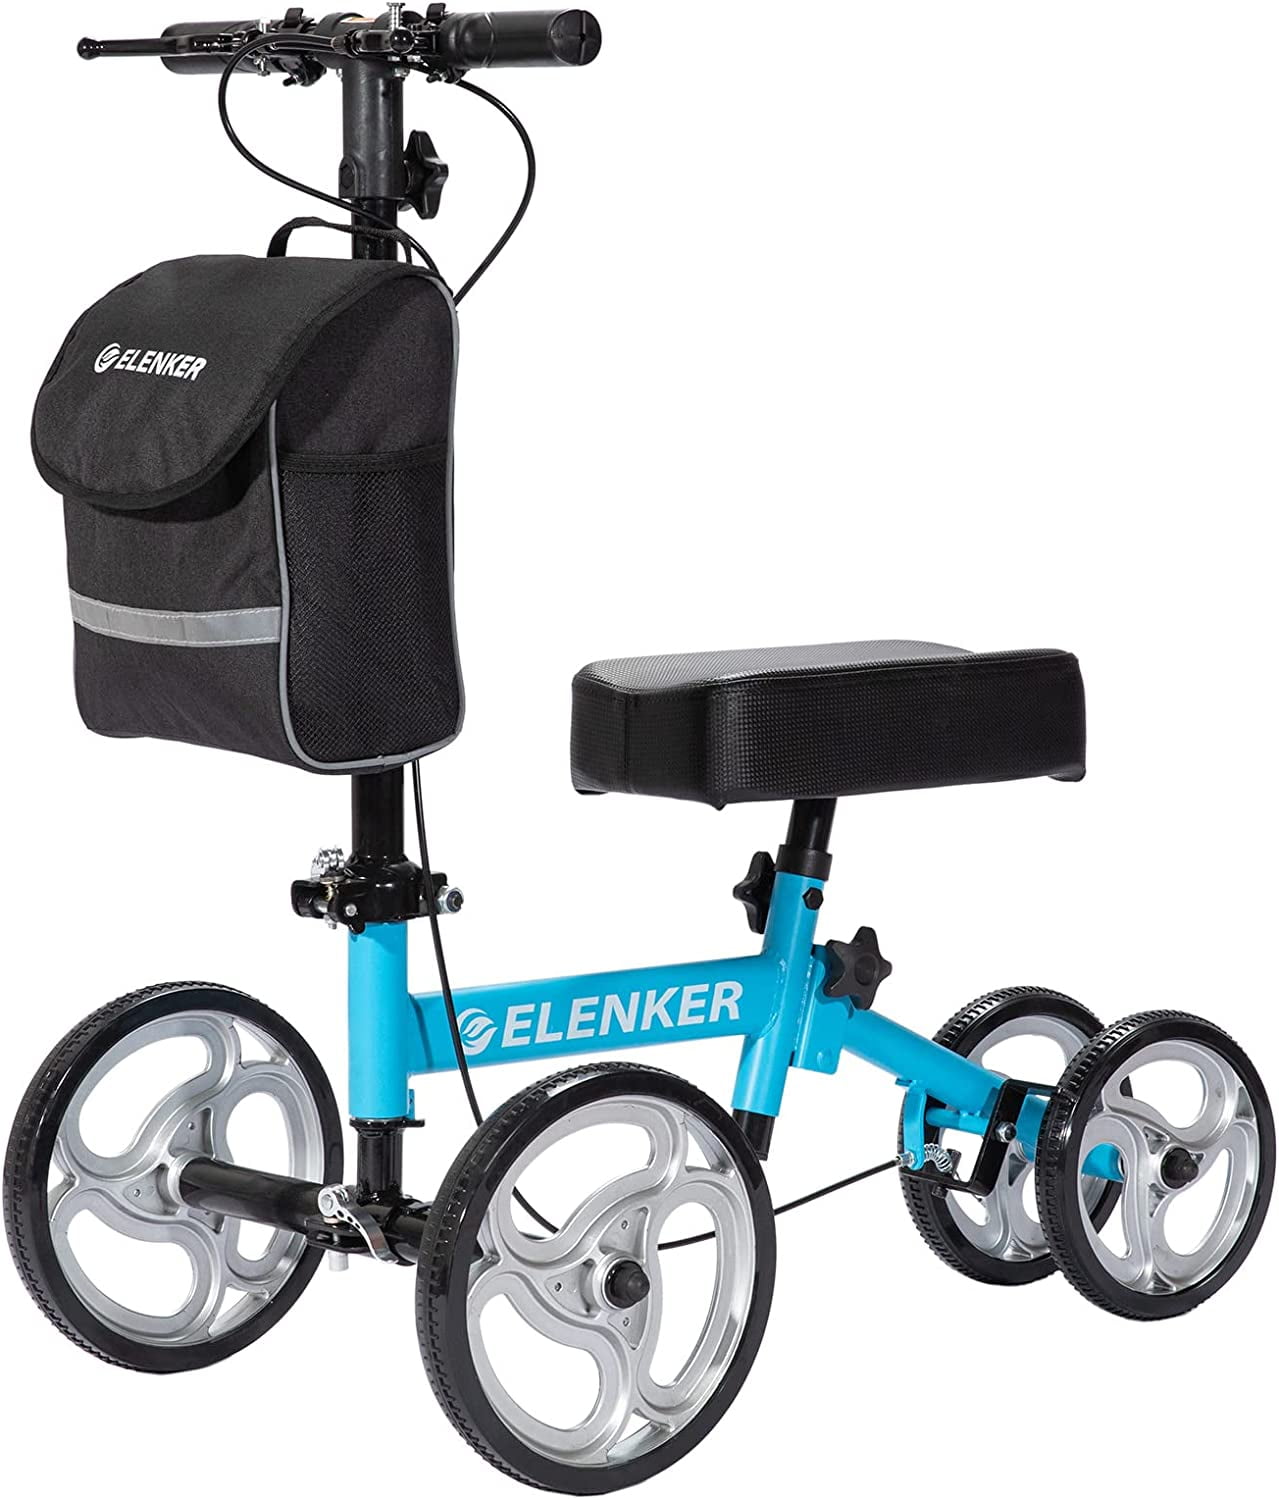 Knee Walker Universal Wheel 7.5 Inch Knee Walker Wheels – KneeRover